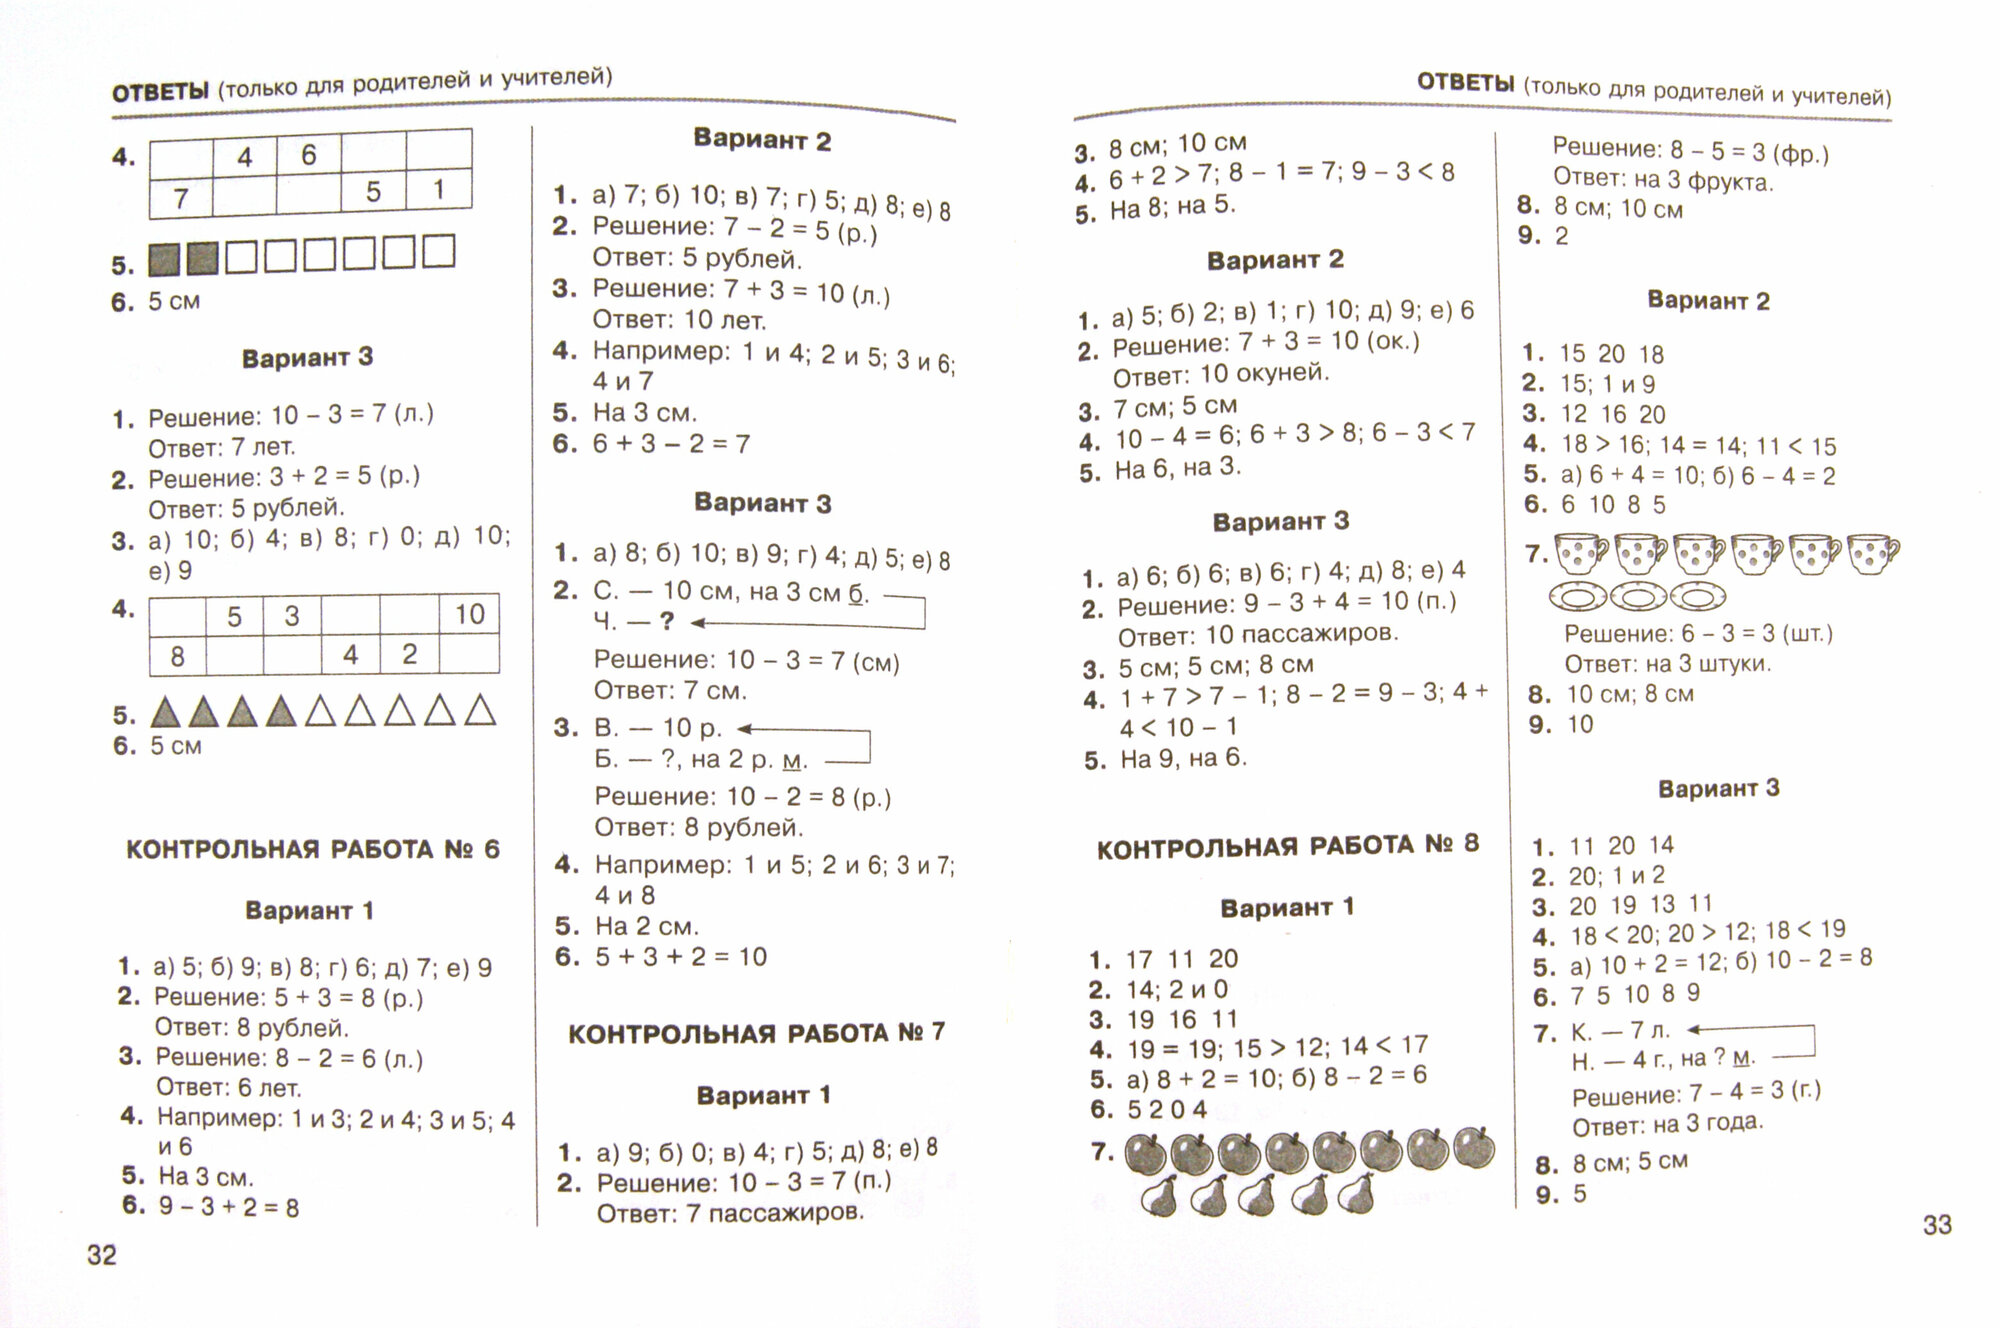 Тетрадь для контрольных работ по математике 1 кл. - фото №2